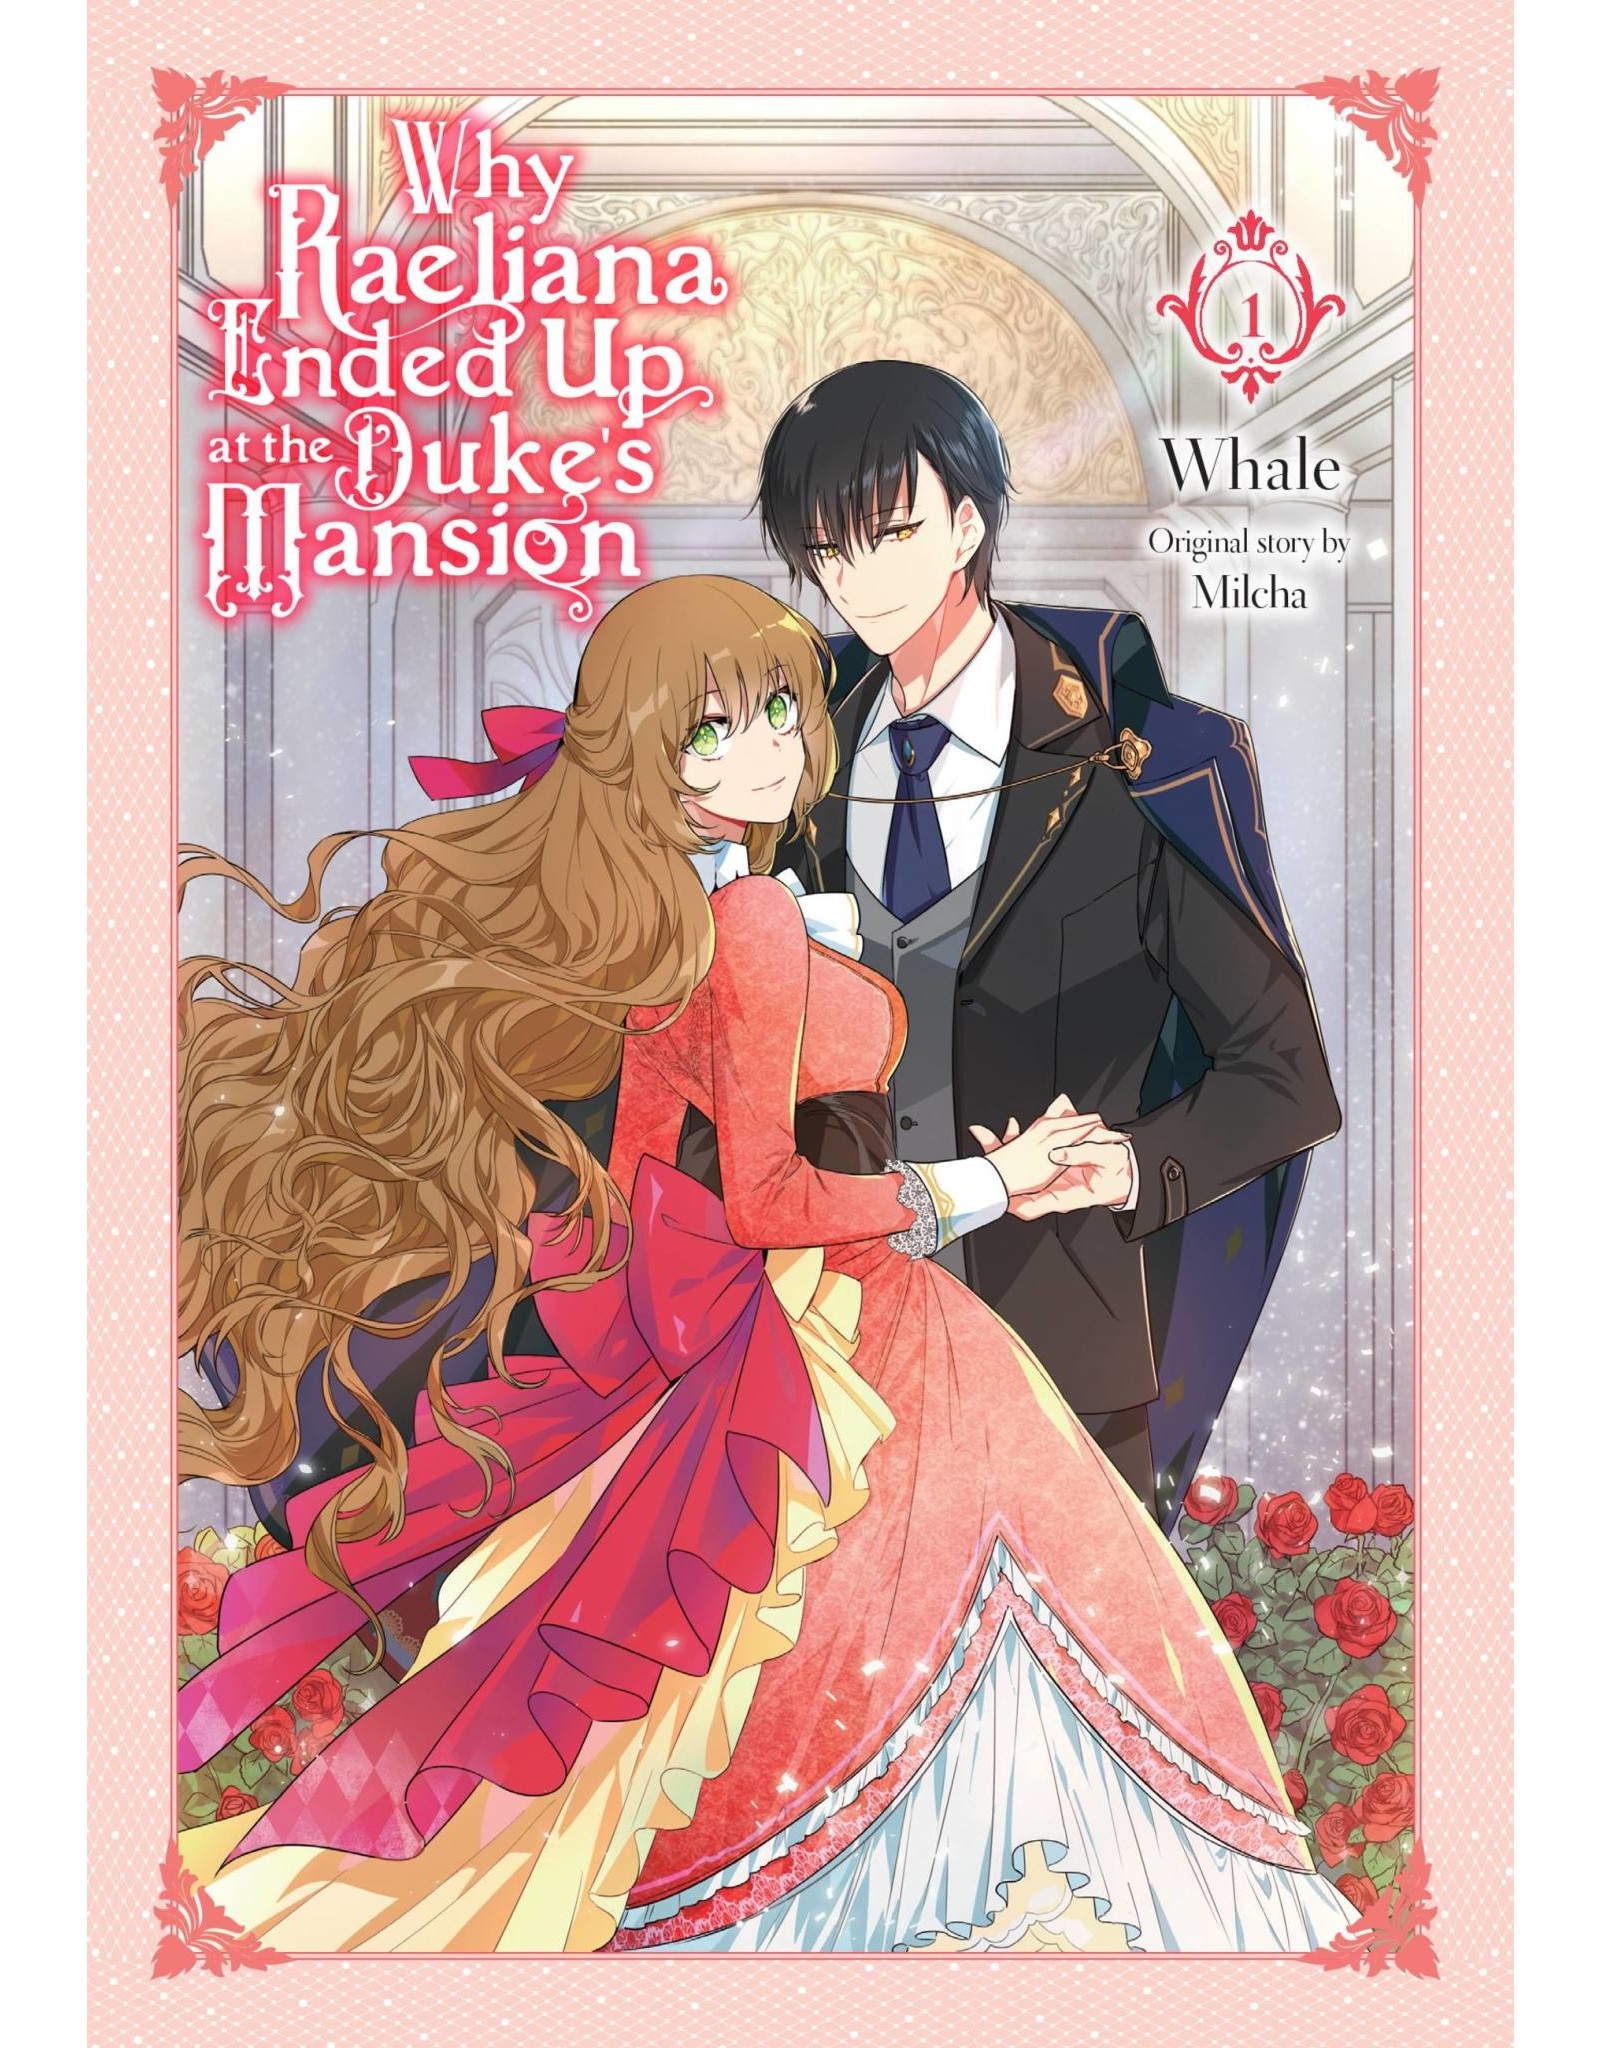 Why Raeliana Ended Up at The Duke's Mansion 01 (English) - Manga